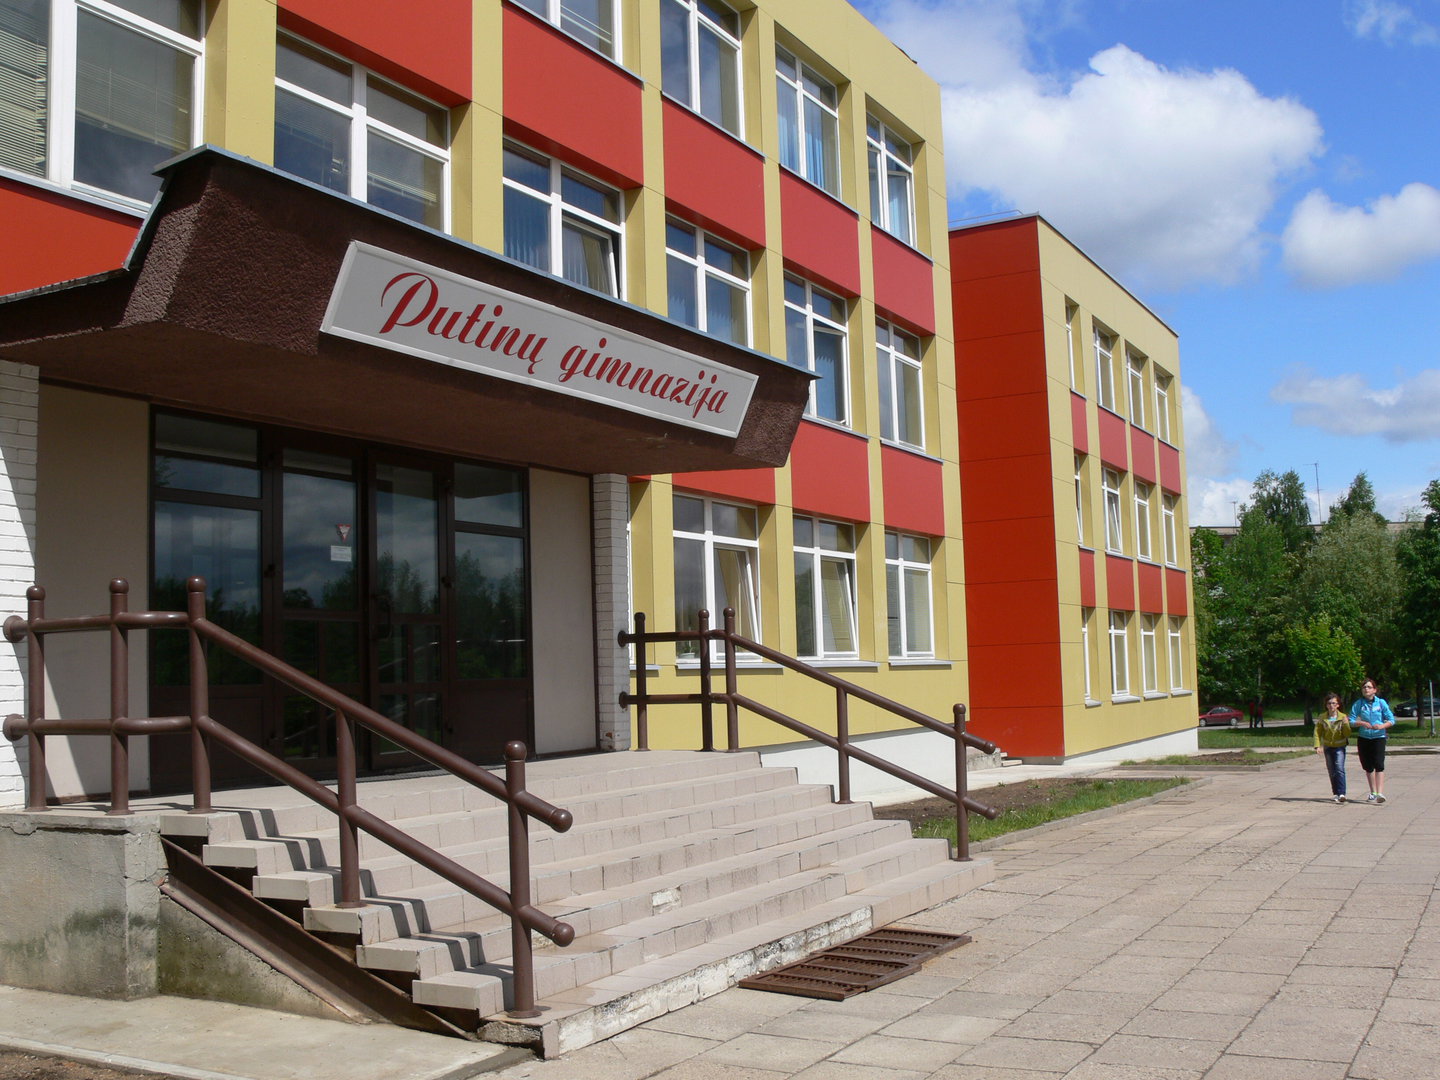 Paskirta 2017 metų brandos egzaminų Alytaus miesto savivaldybės bazinė mokykla